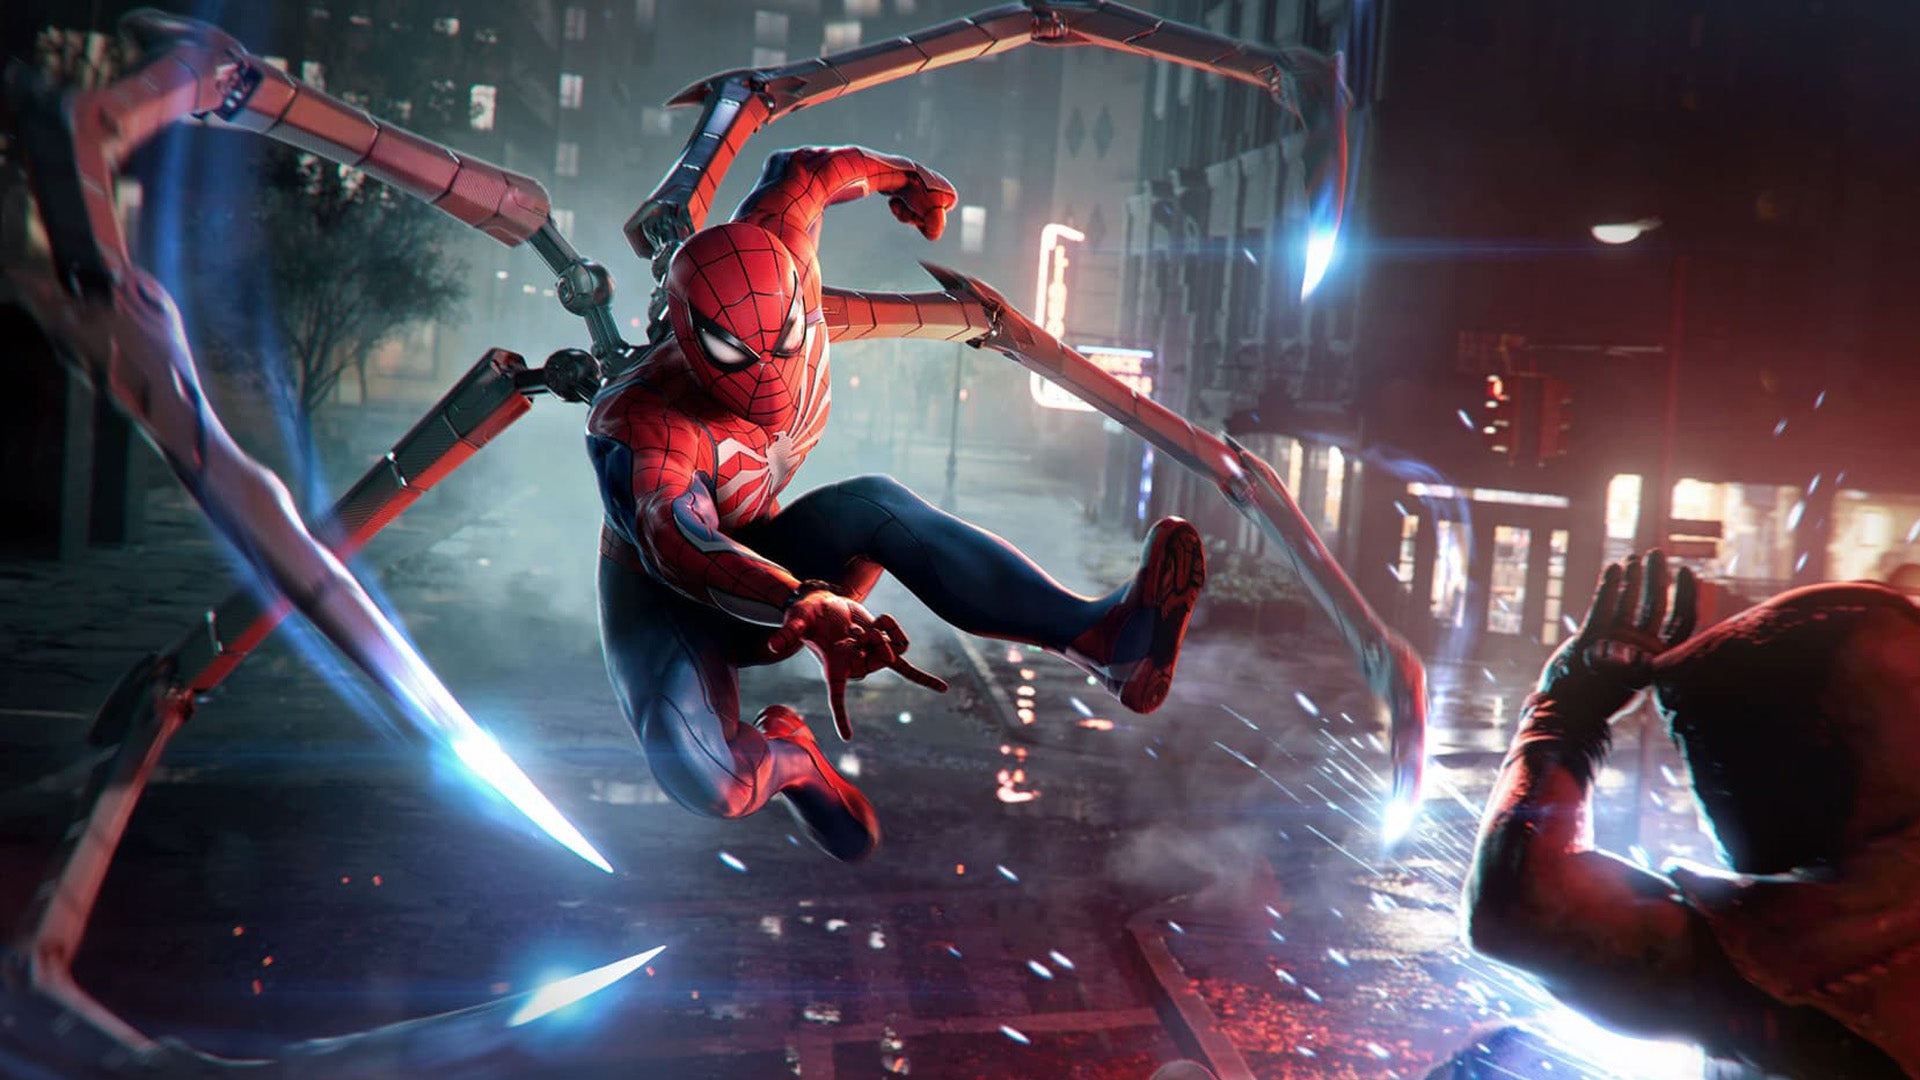 Spider-Man seen wearing the Iron Spider suit in Spider-Man 2